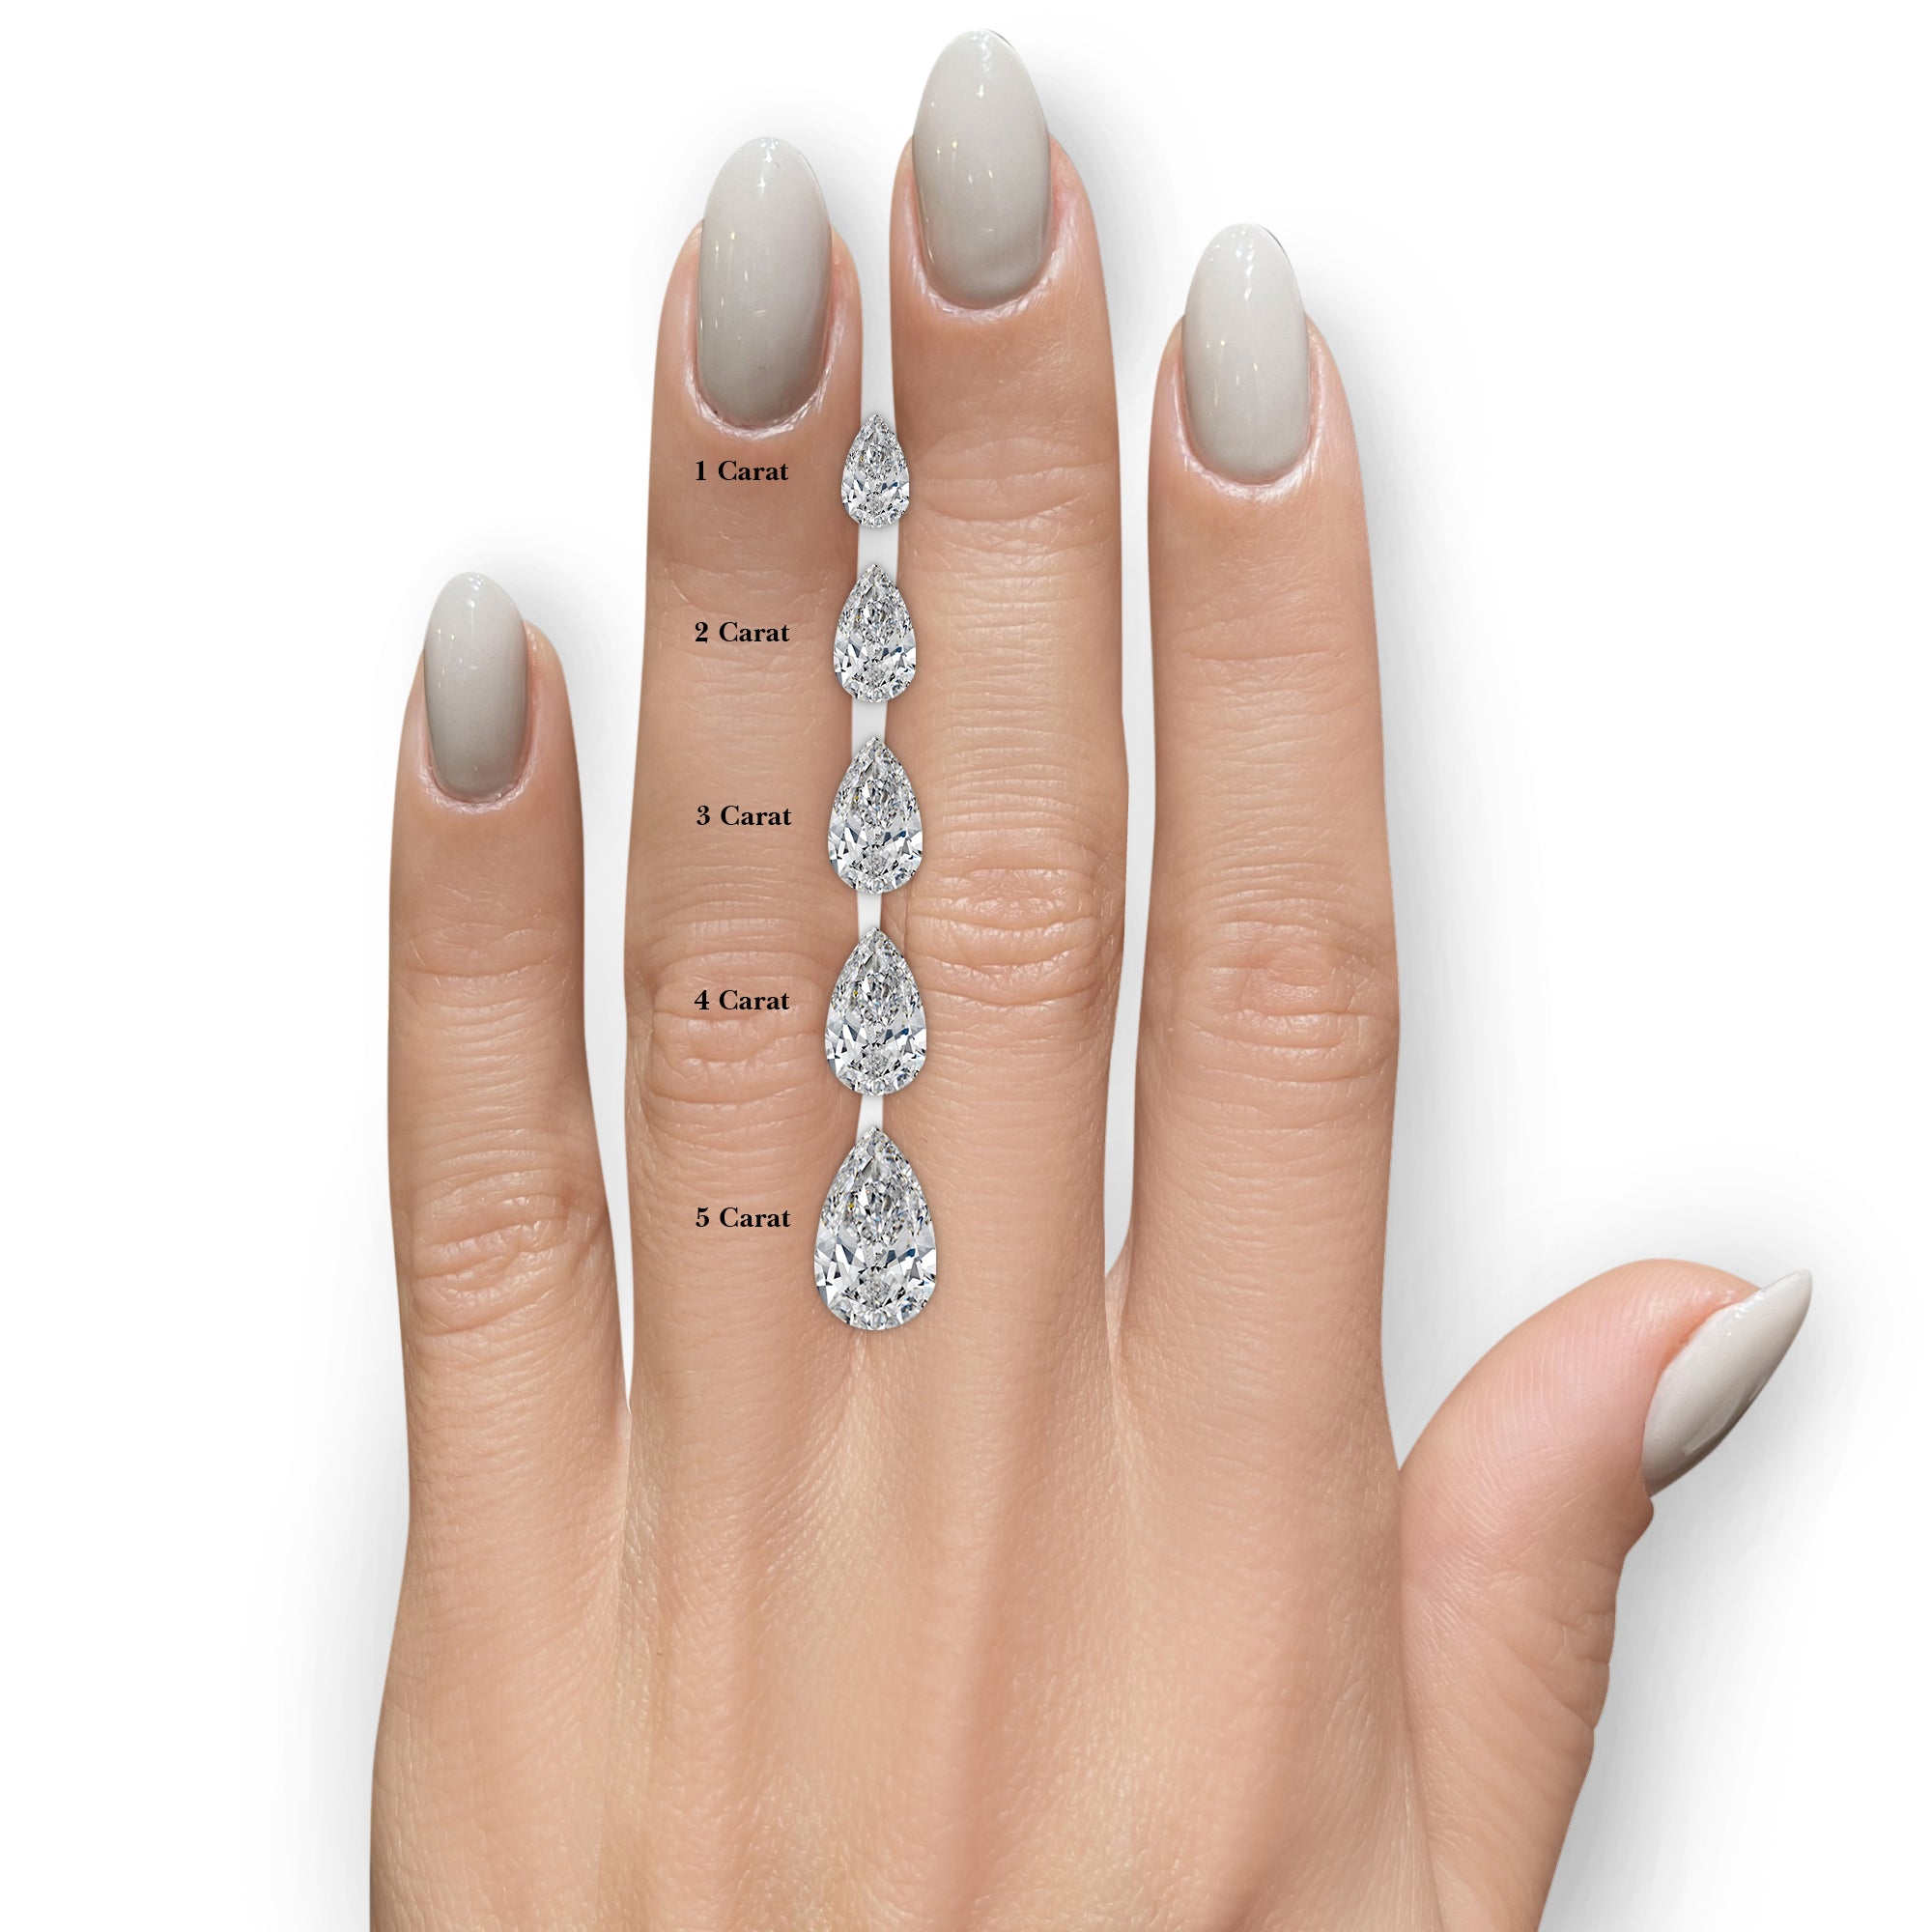 Willow Lab Grown Diamond Ring -14K White Gold